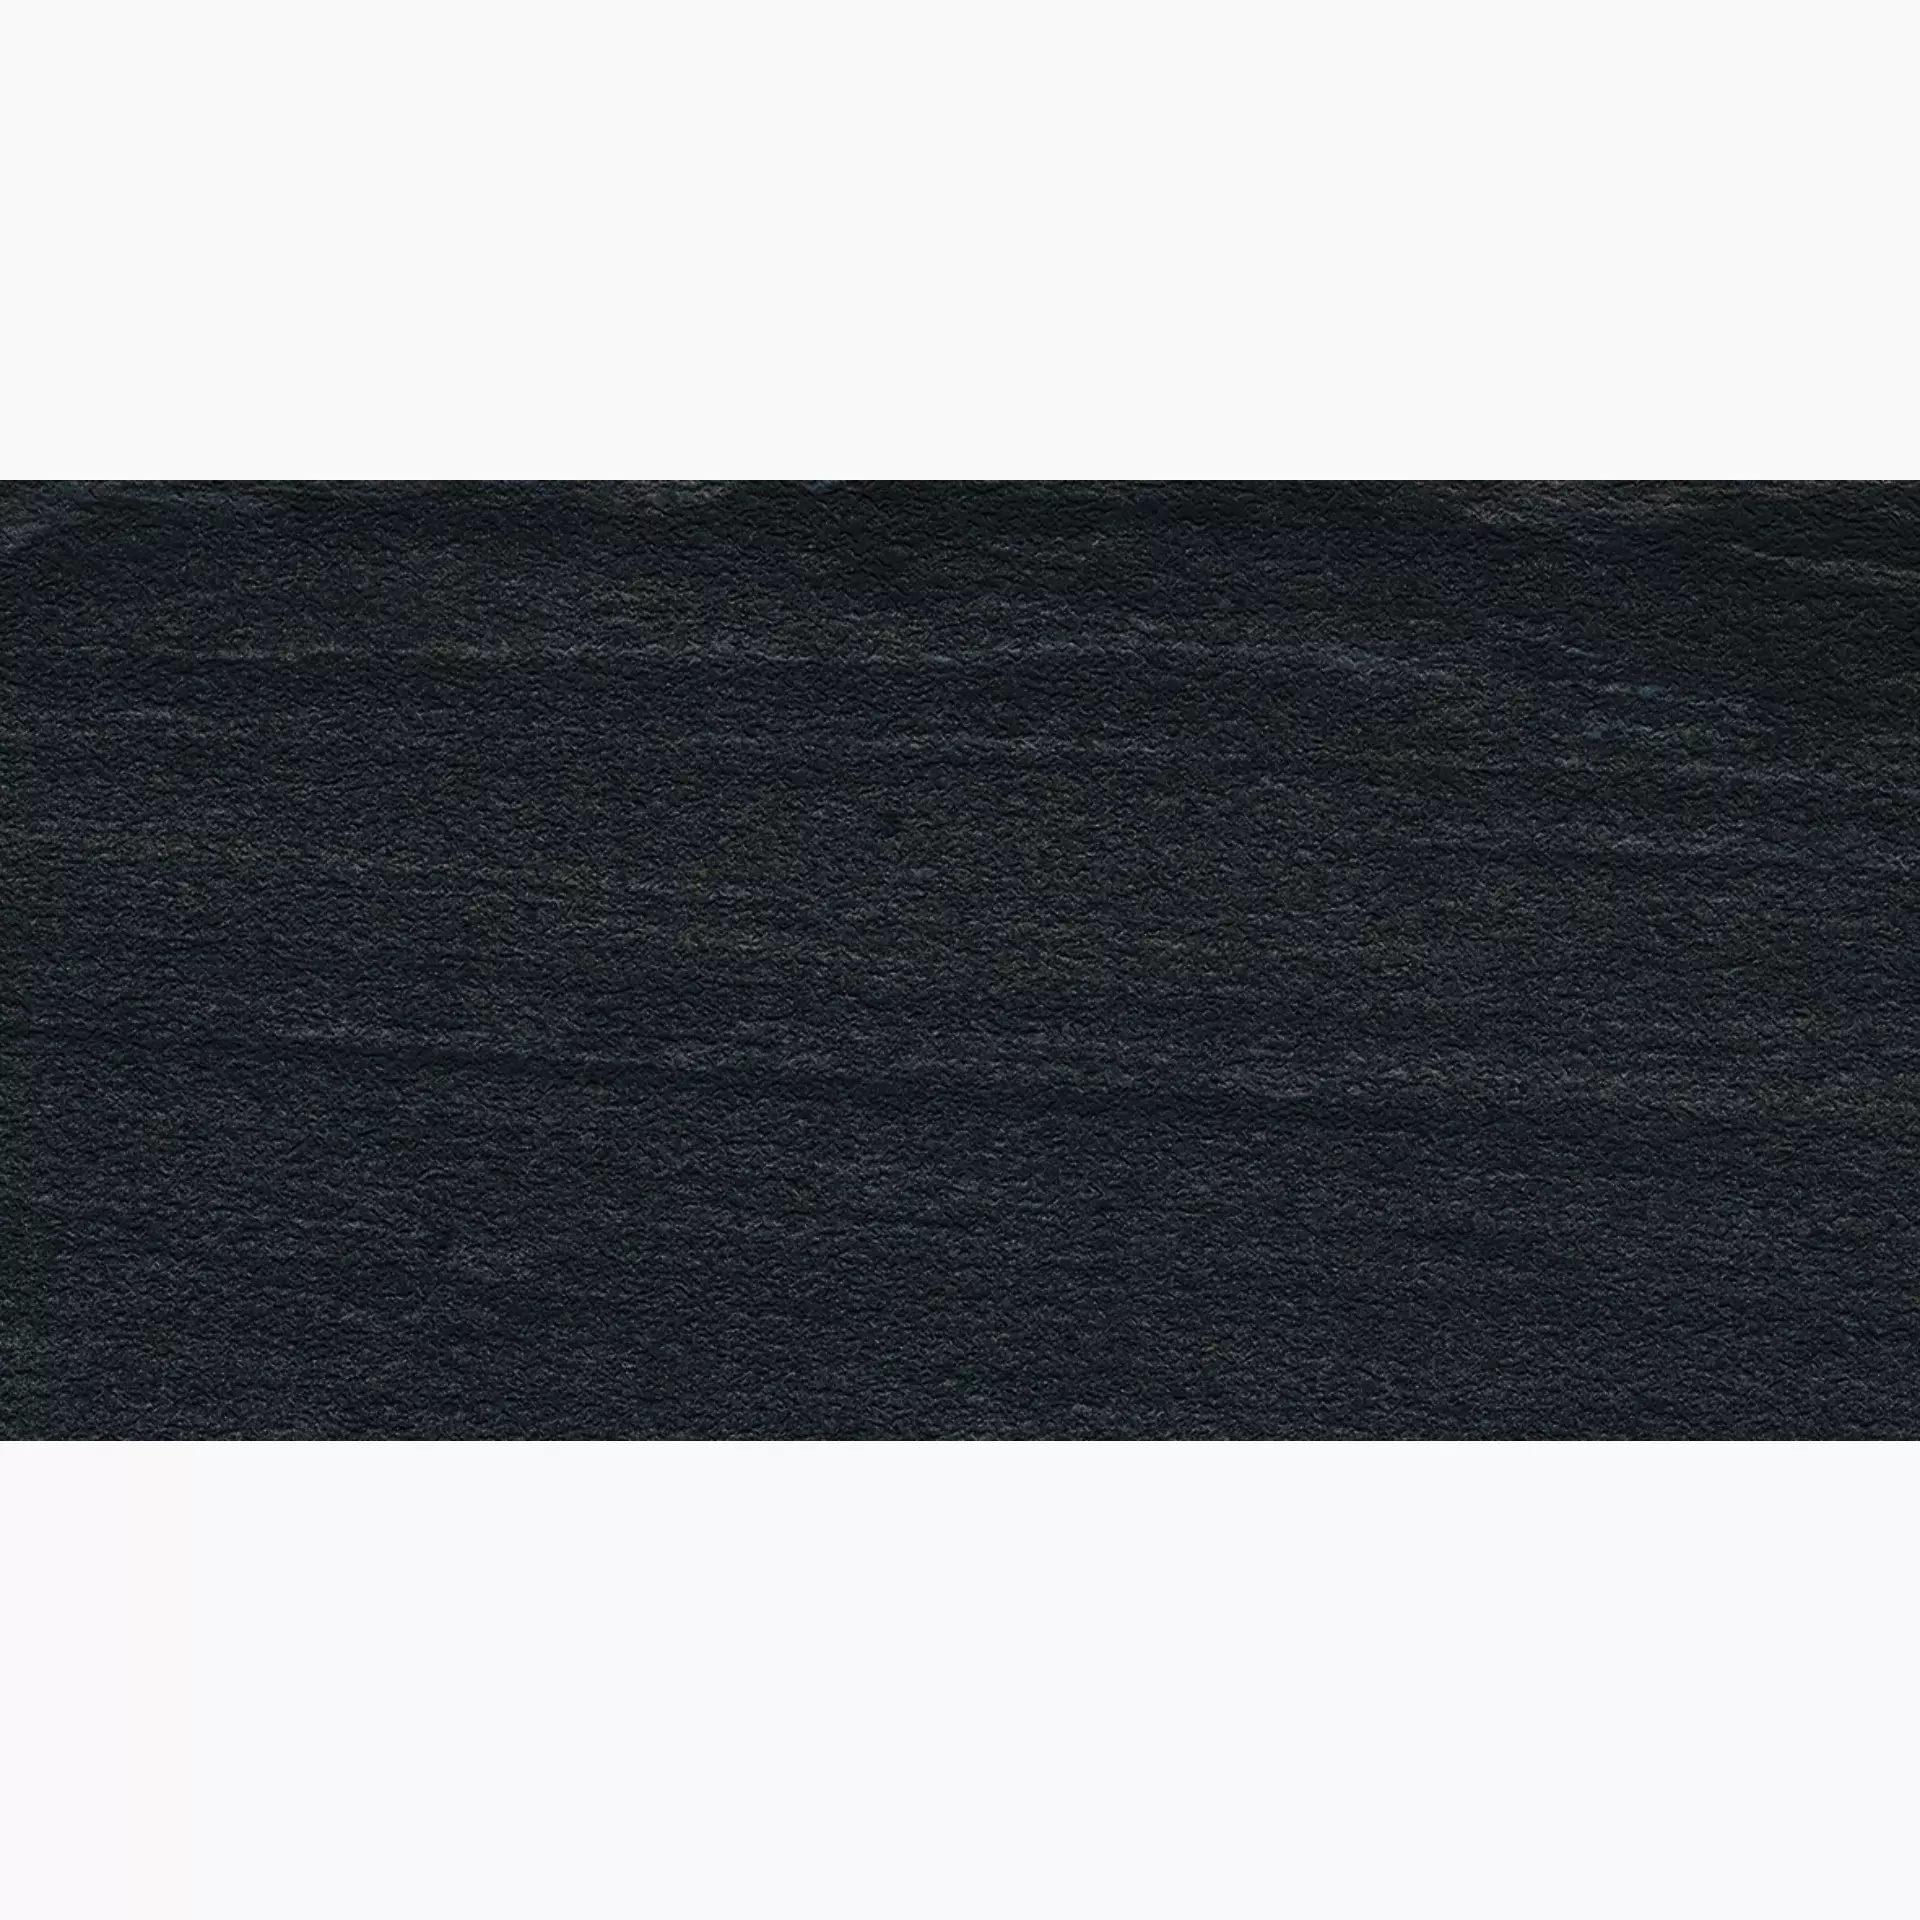 Ergon Stone Project Black Strutturato E6LC 60x120cm rectified 9,5mm